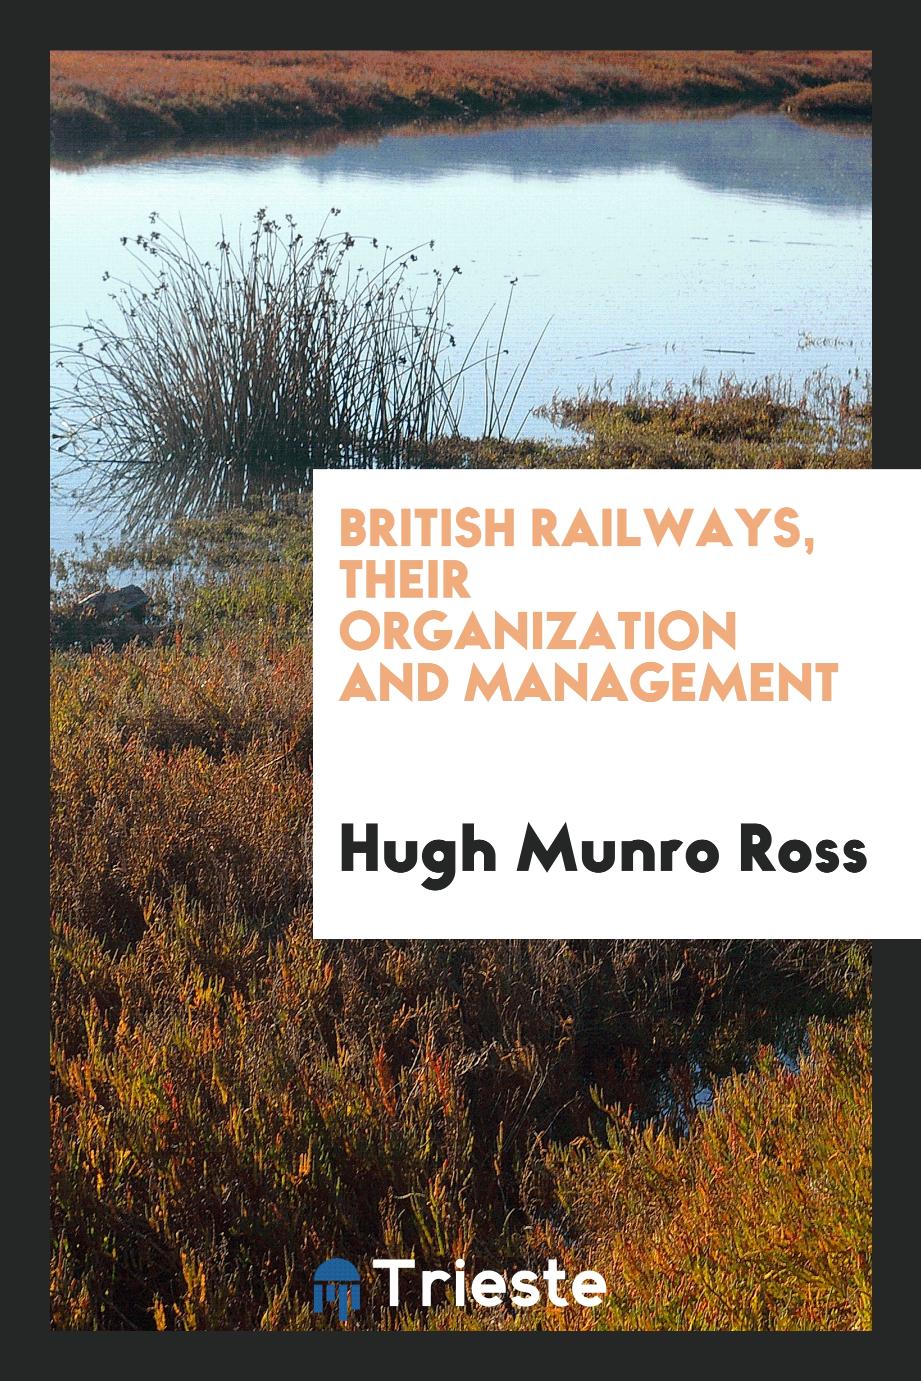 British railways, their organization and management